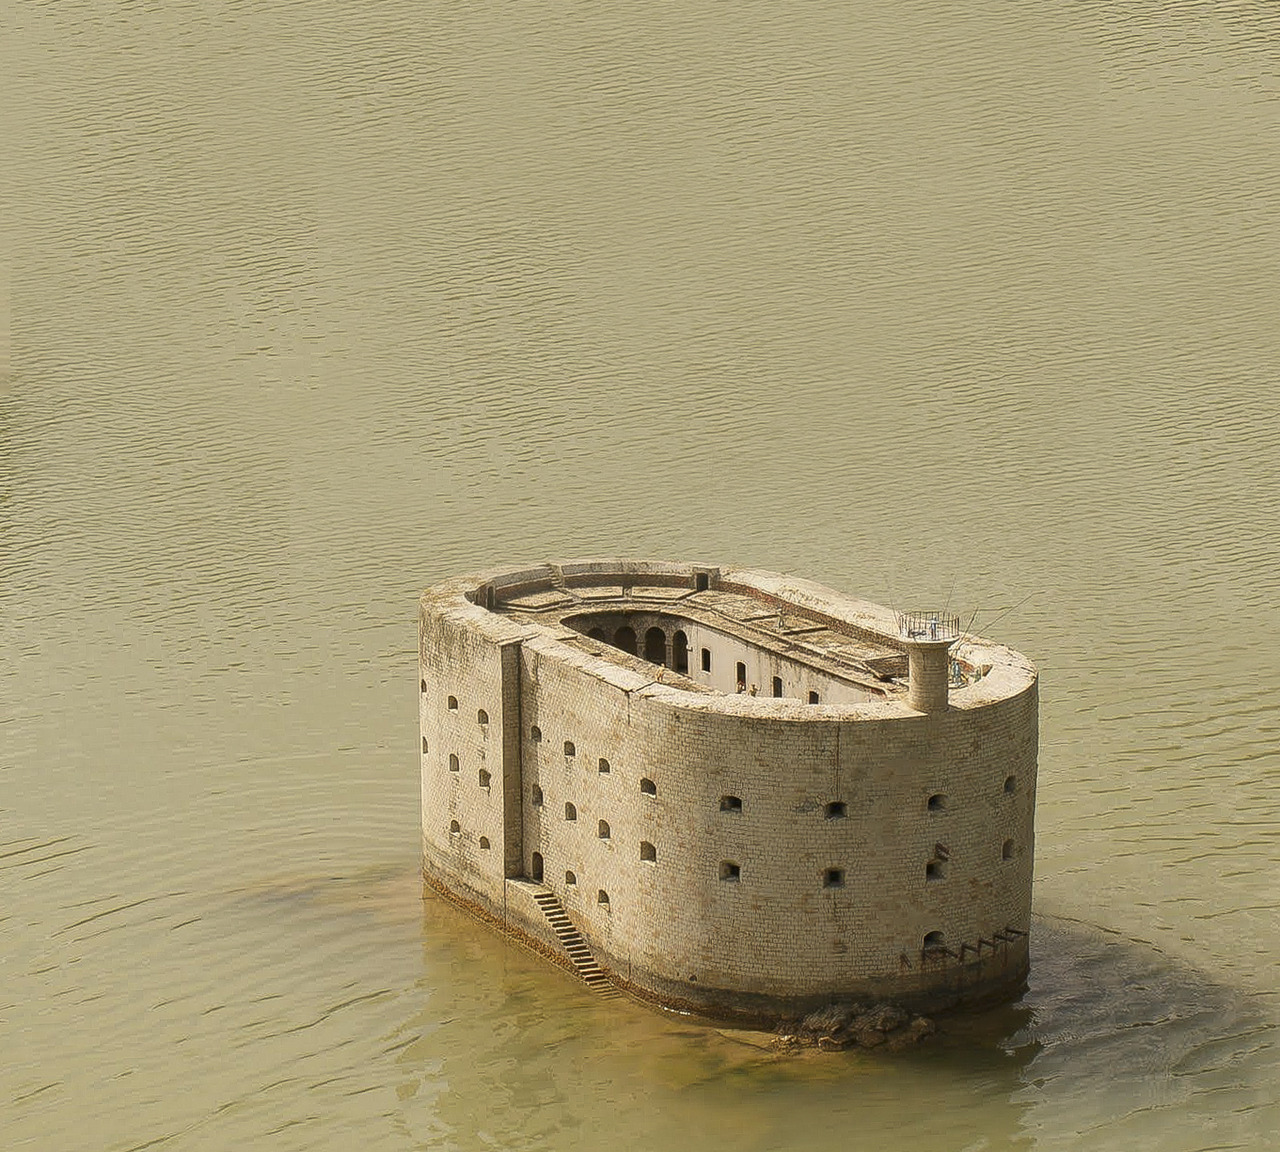 как строили форт боярд в море